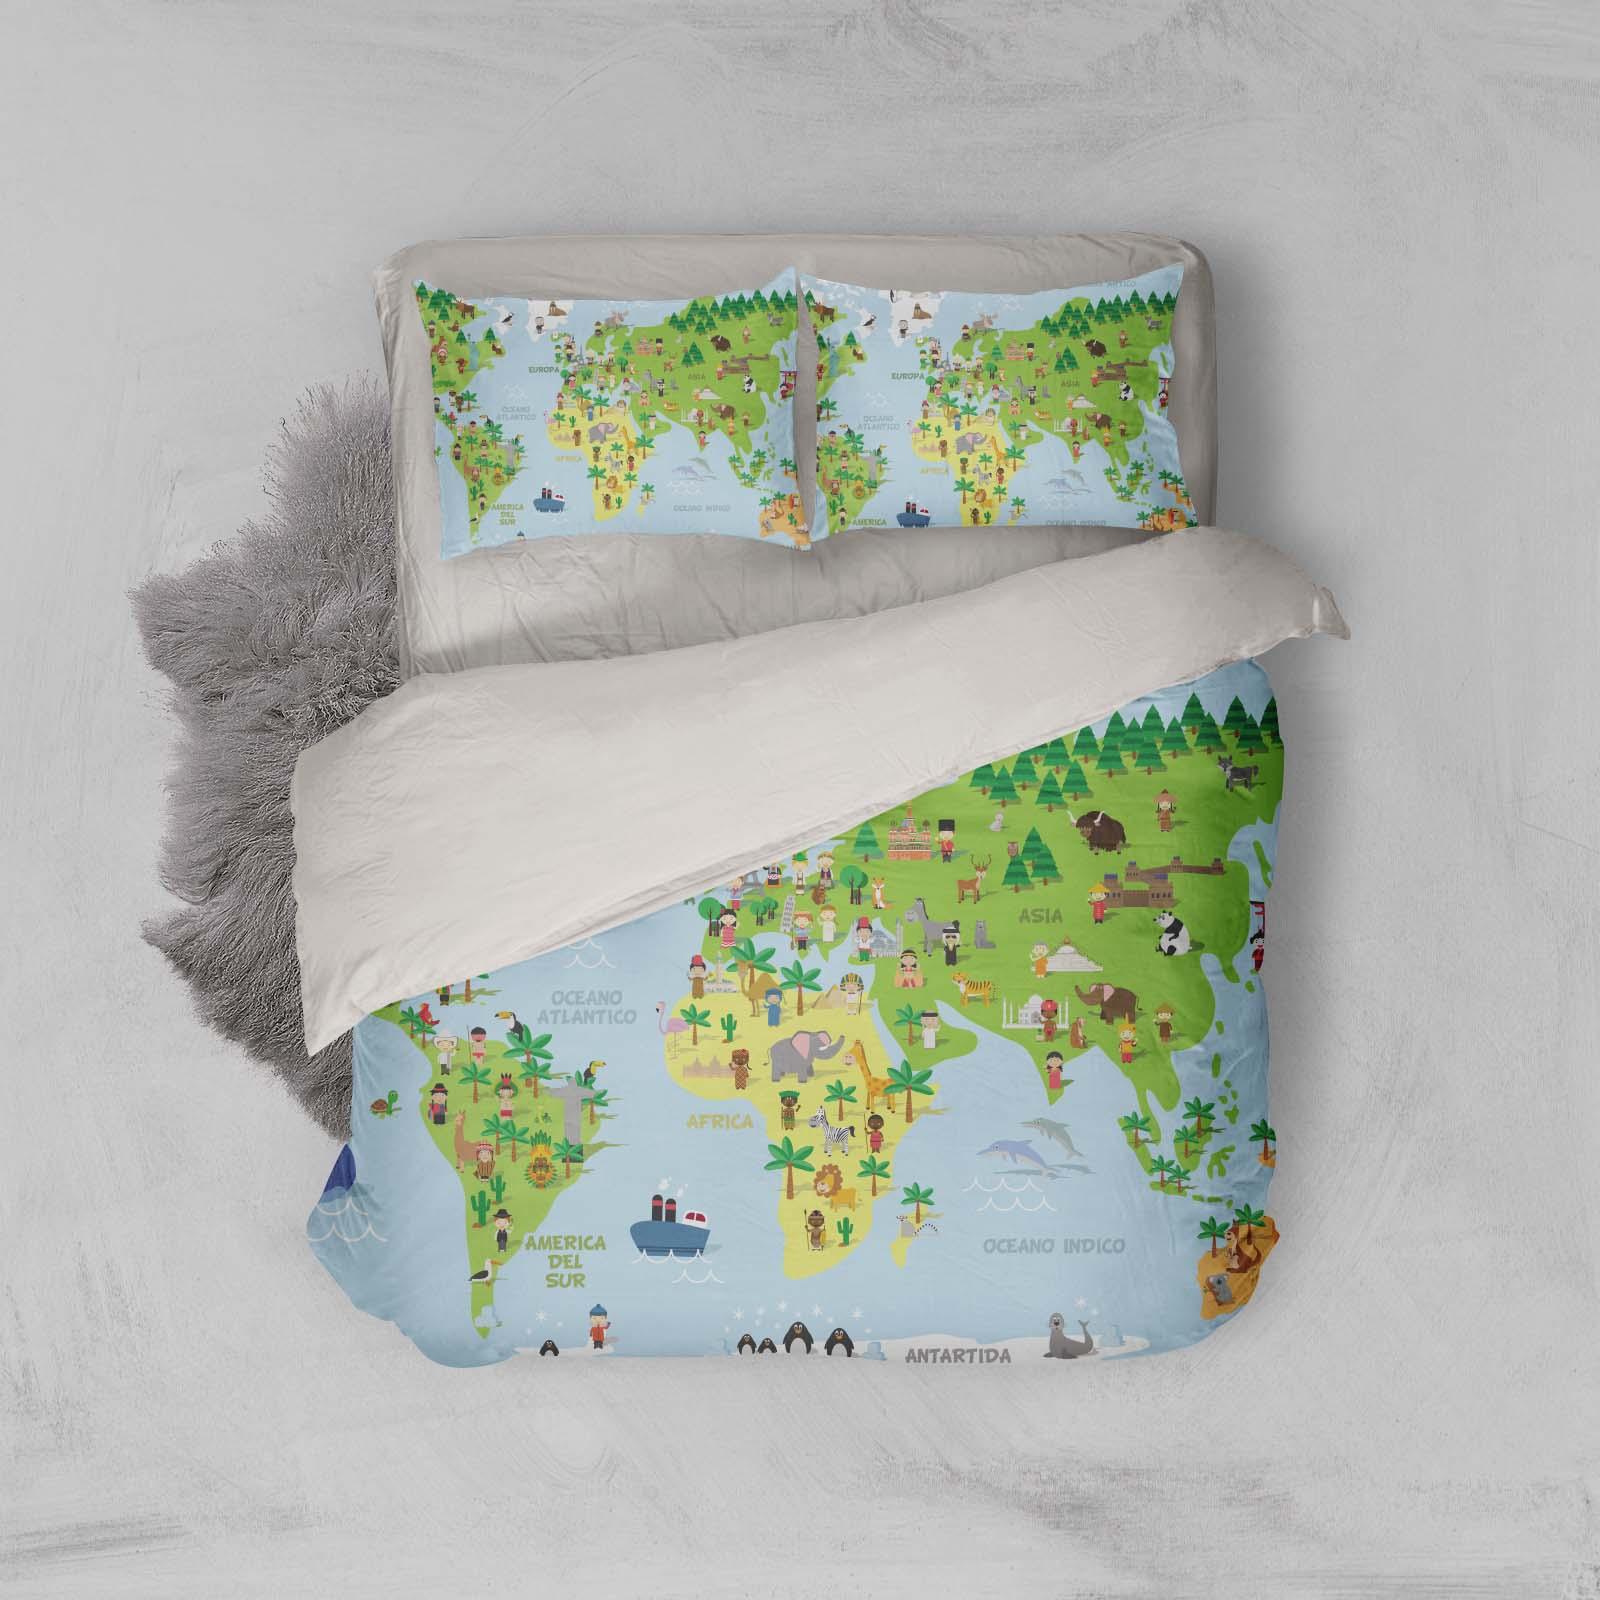 3D Green Animals World Map Quilt Cover Set Bedding Set Pillowcases 55- Jess Art Decoration